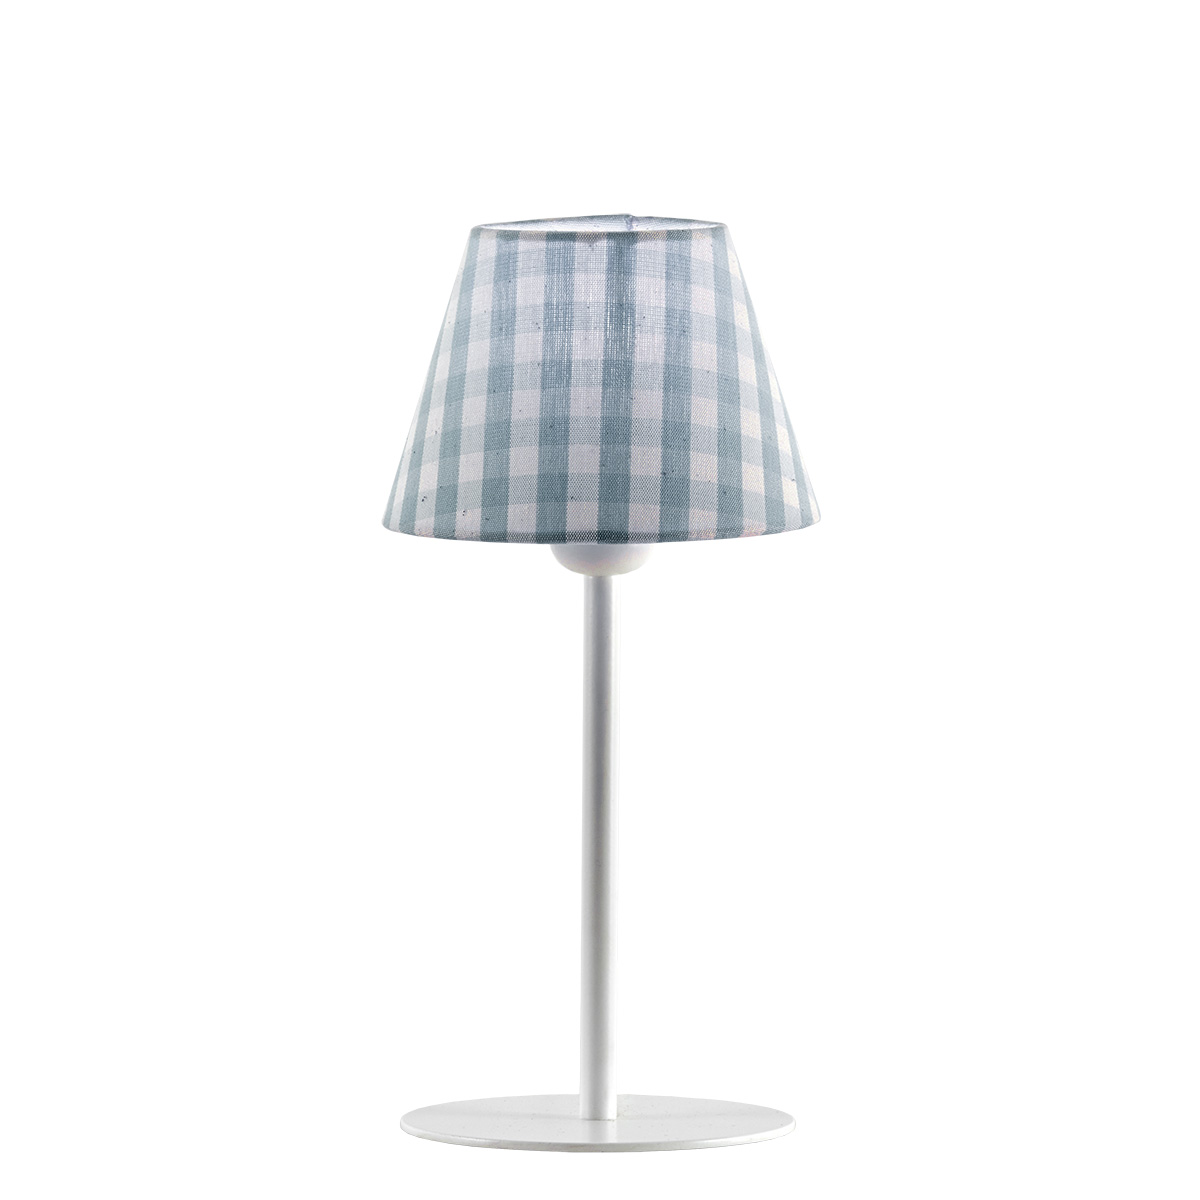 Πορτατίφ με σιελ καρό καπέλο CAROUSEL table lamp with light blue plaided shade